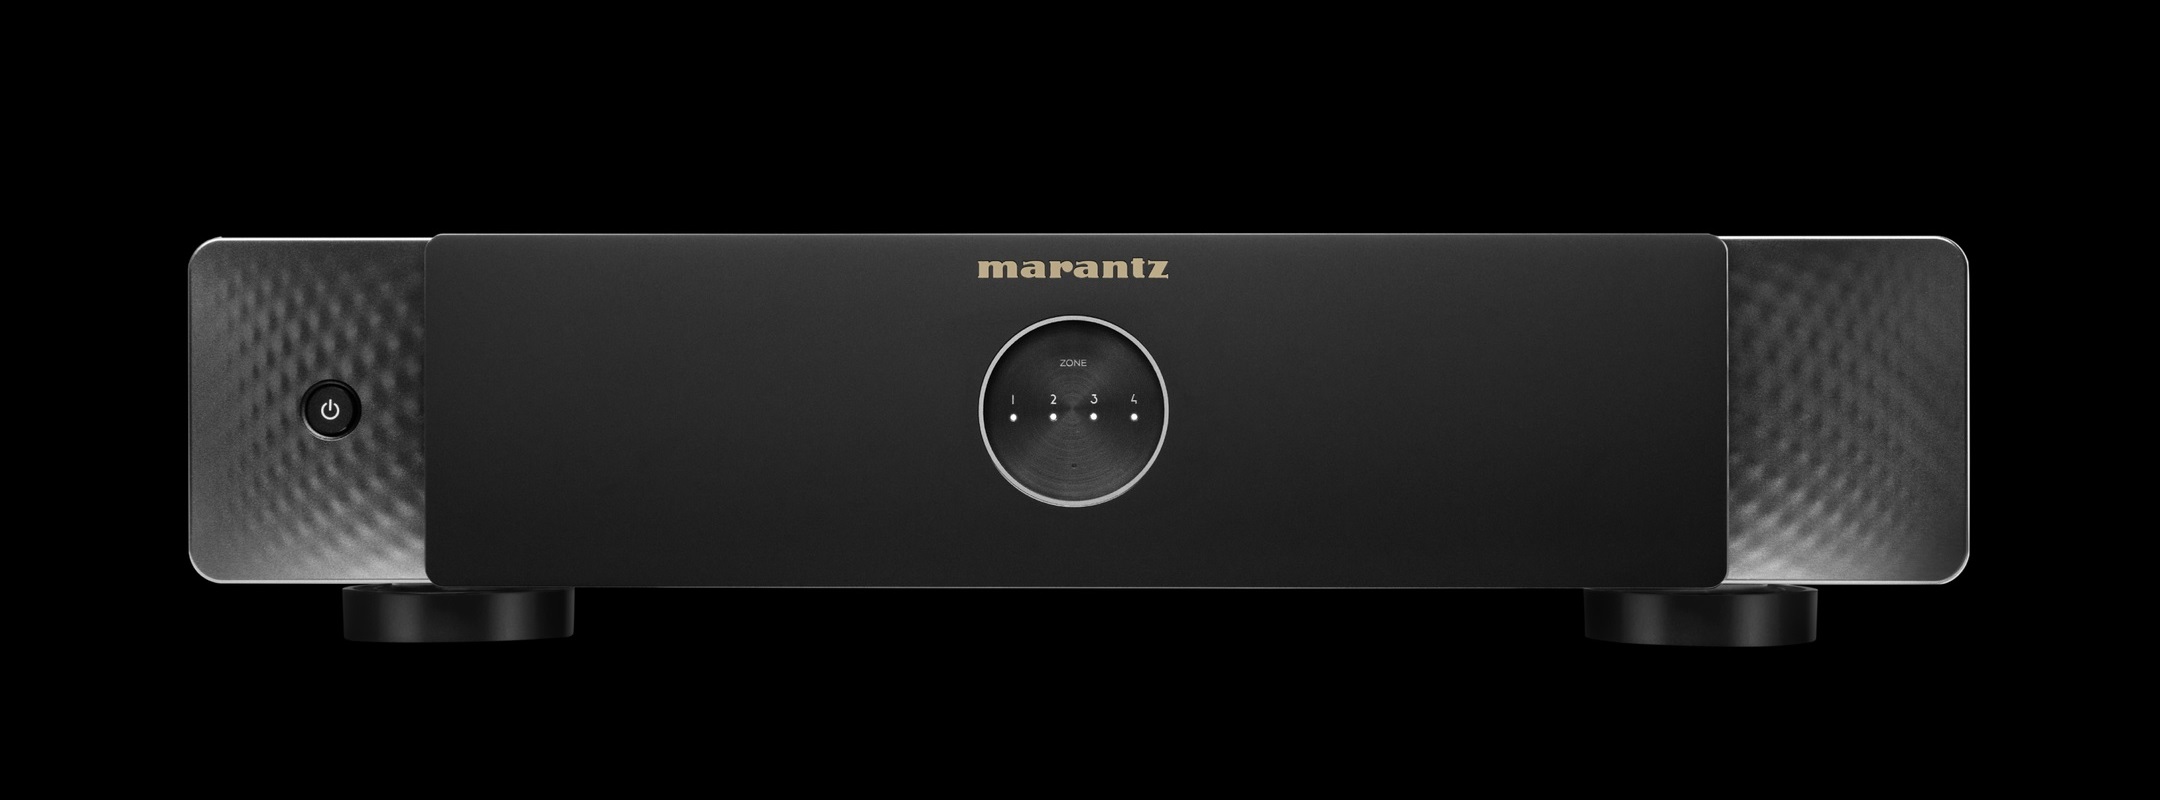 Marantz Model M4 vier configureerbare stereoversterkers met streaming functies in een behuizing